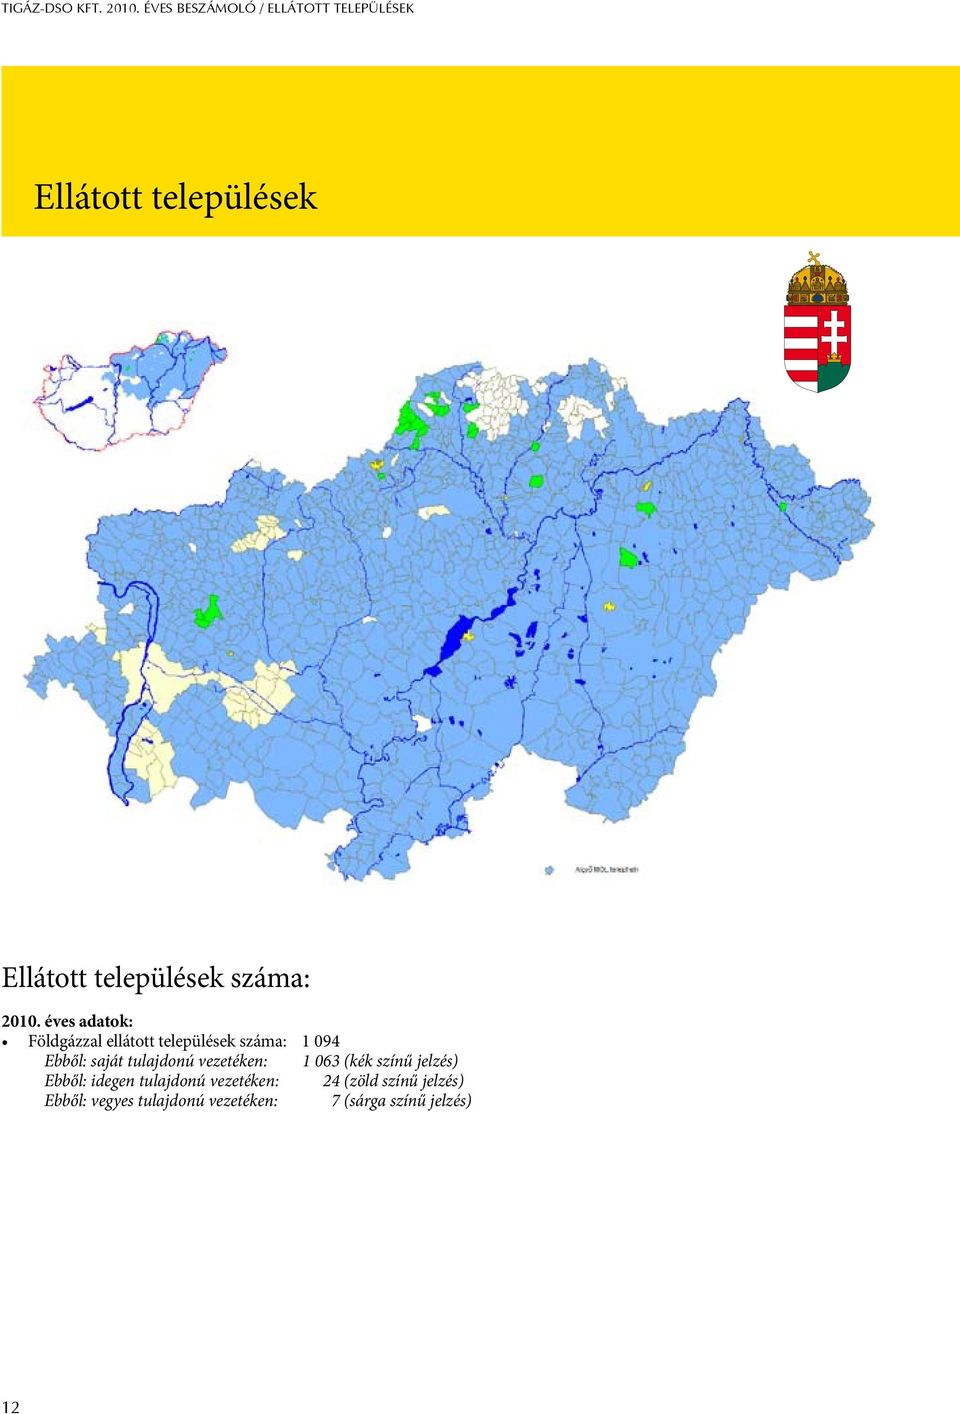 éves adatok: Földgázzal ellátott települések száma: 1 094 Ellátott települések száma: Ebből: saját tulajdonú vezetéken: 1 063 (kék színű jelzés) Ebből: idegen tulajdonú